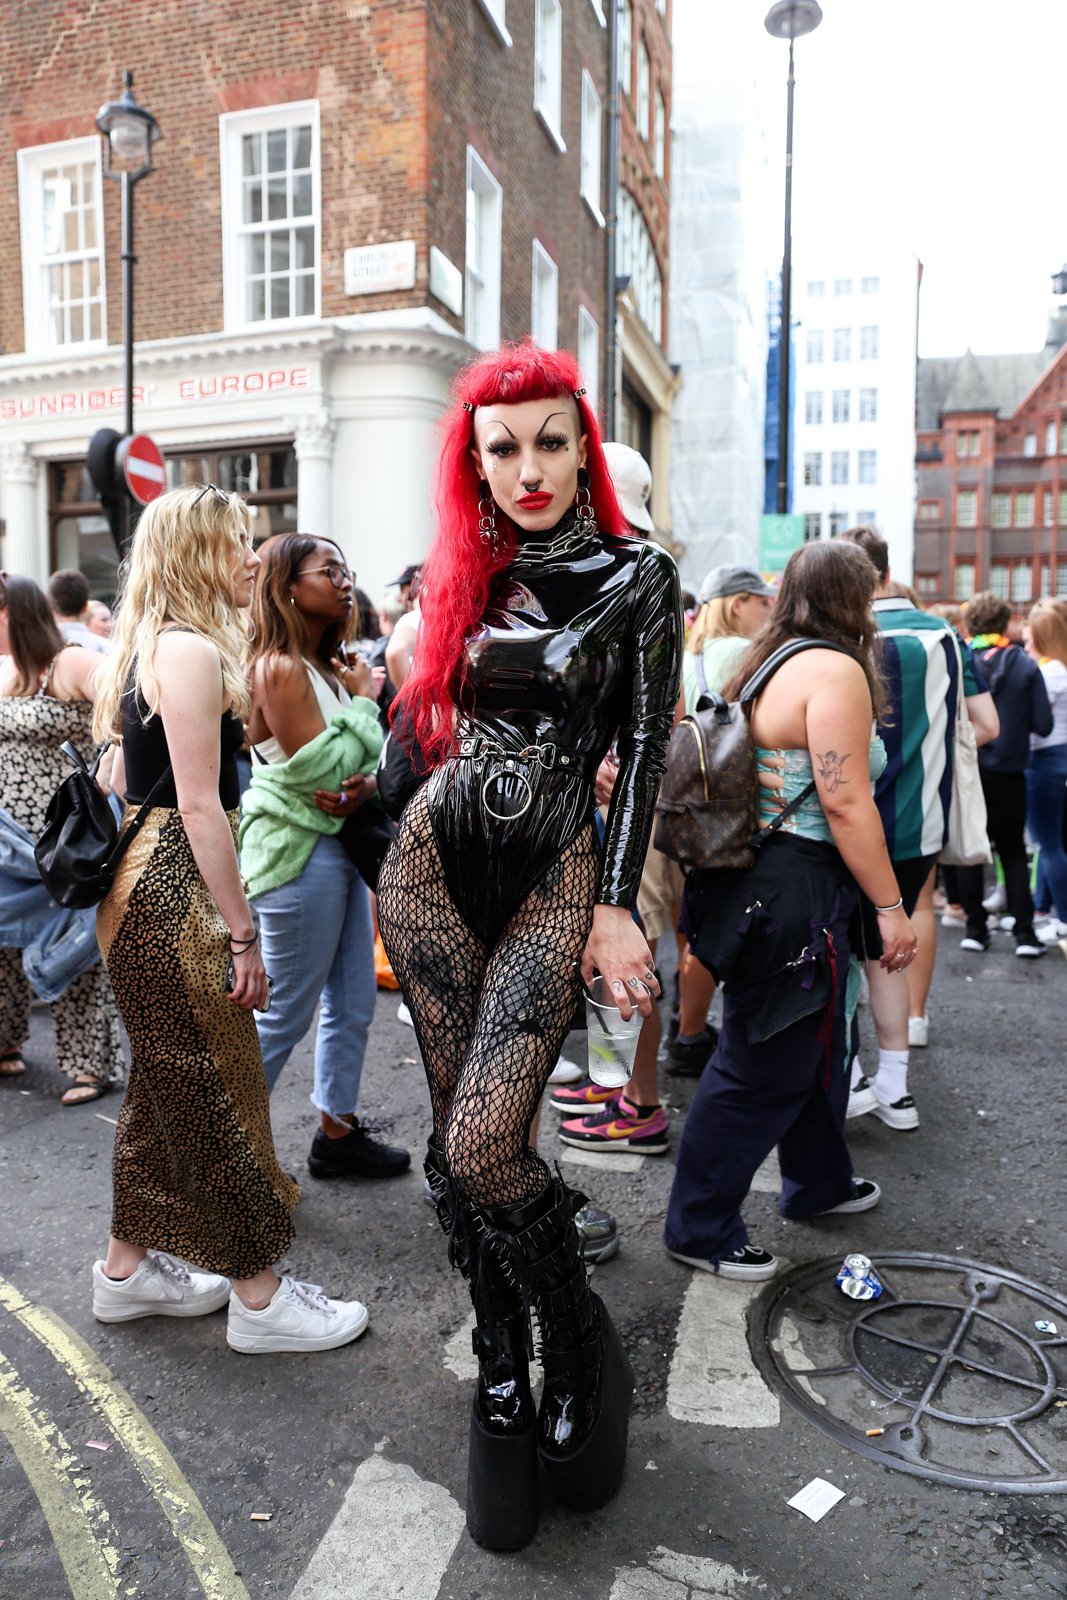 Kink at Pride in London 2022